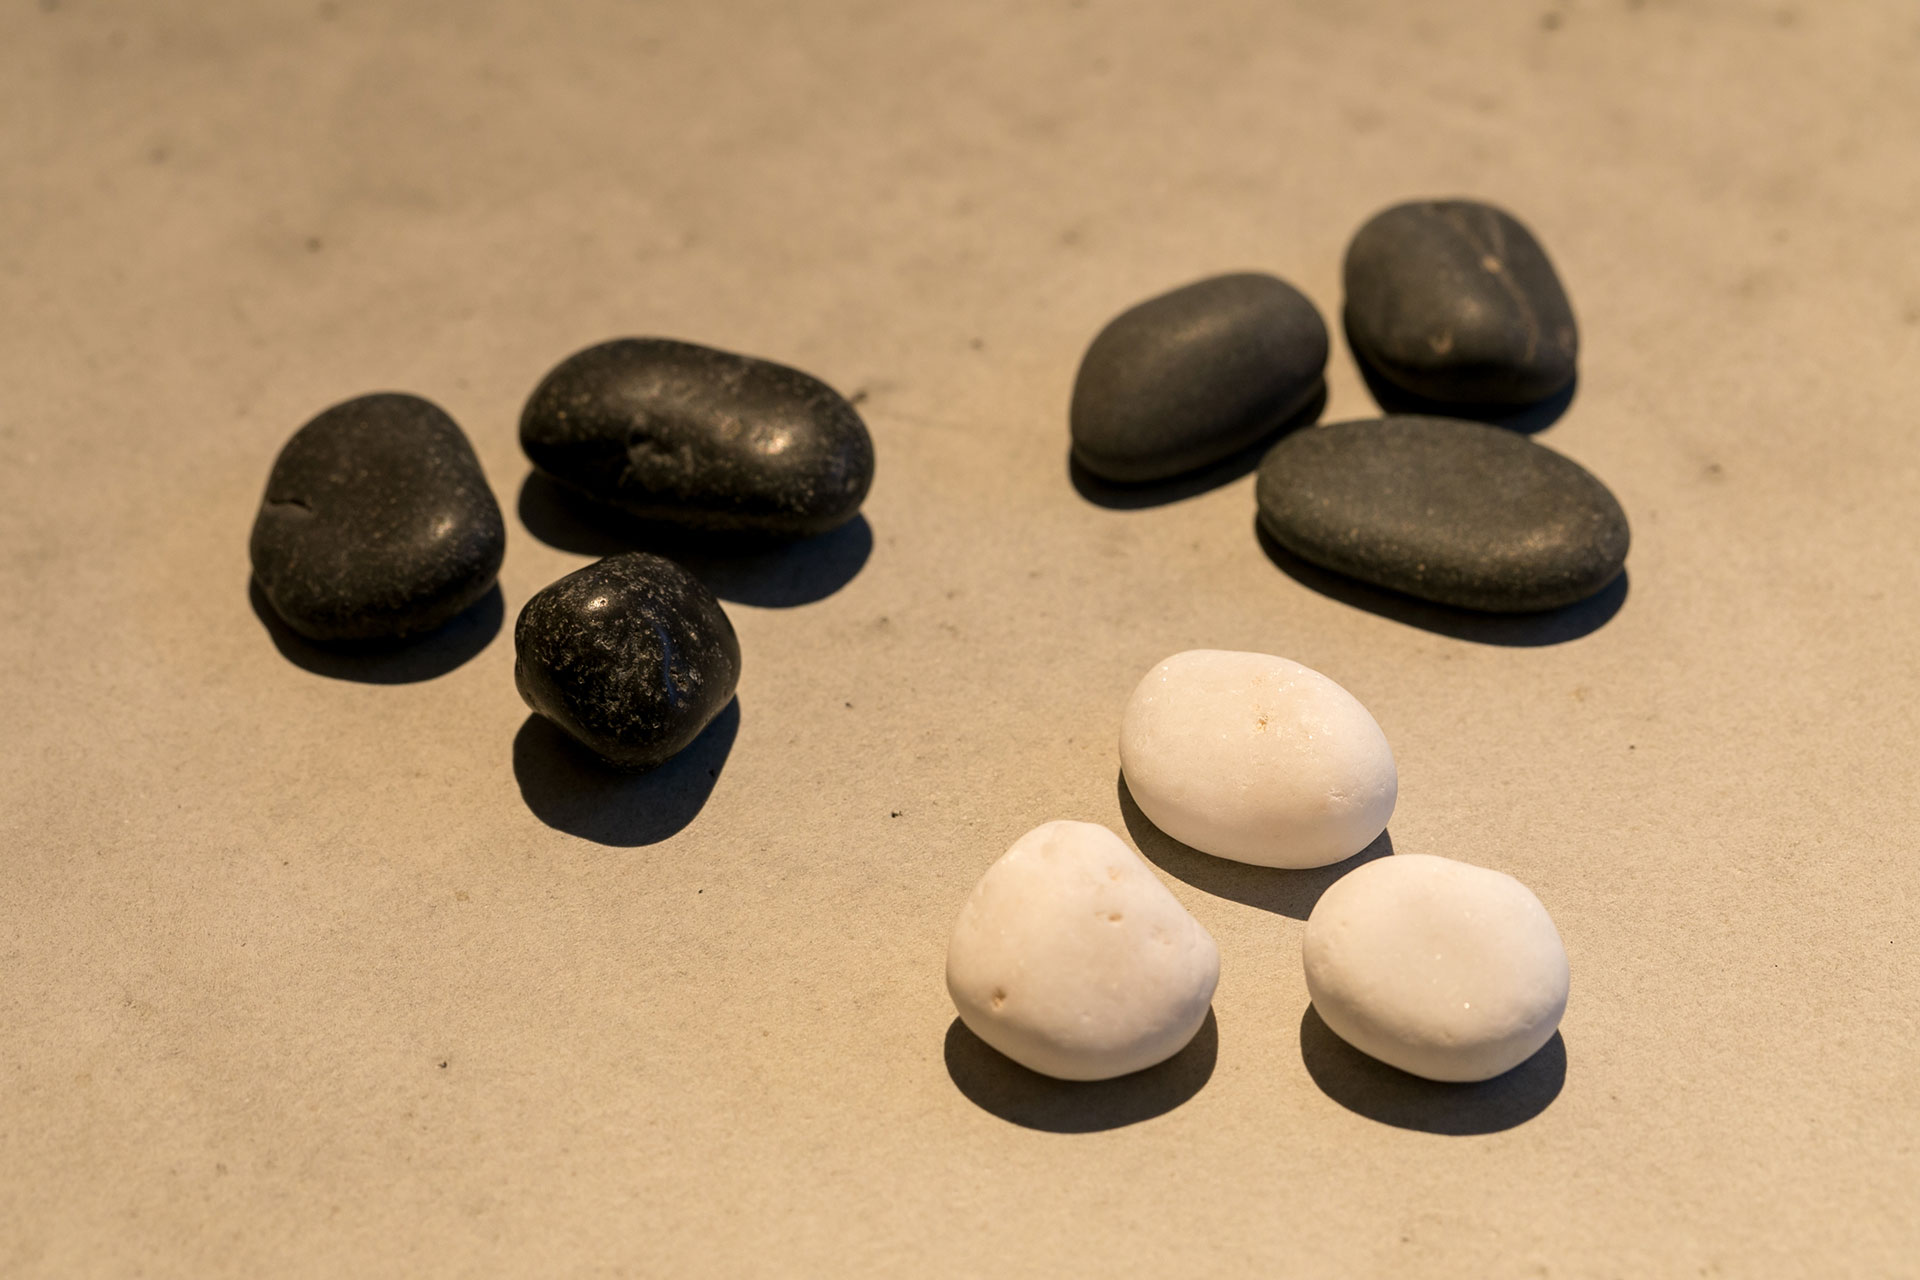 オプションで３色の丸みのある石を選ぶこともできる。白は雪華石、黒の河川黒玉石、乾いた状態でもひときわ黒い特選黒玉石から選べる。